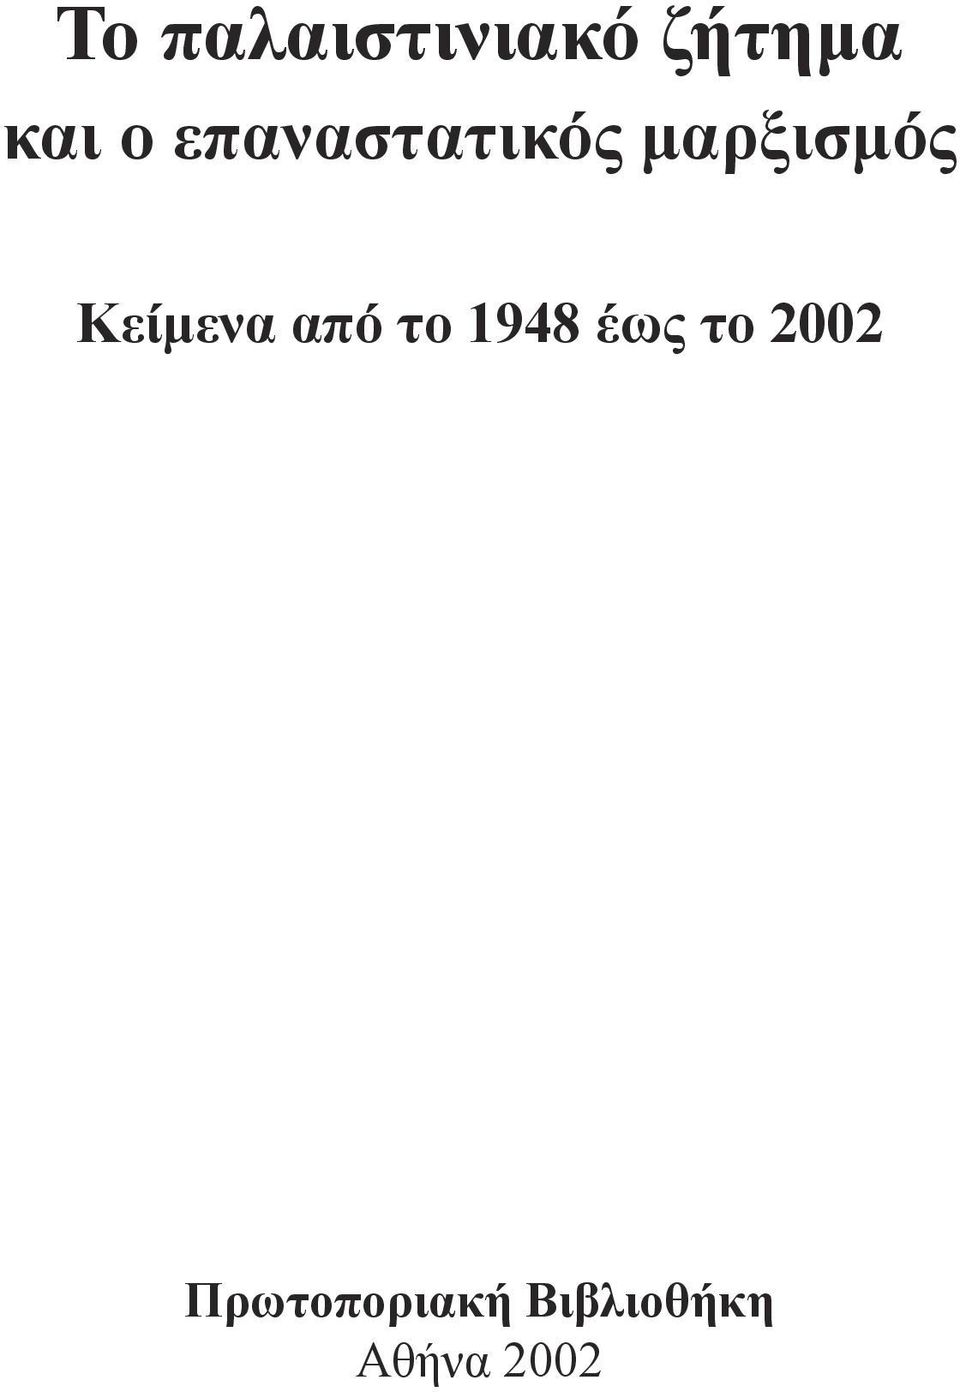 έως το 2002 Πρωτοποριακή Βιβλιοθήκη Αθήνα